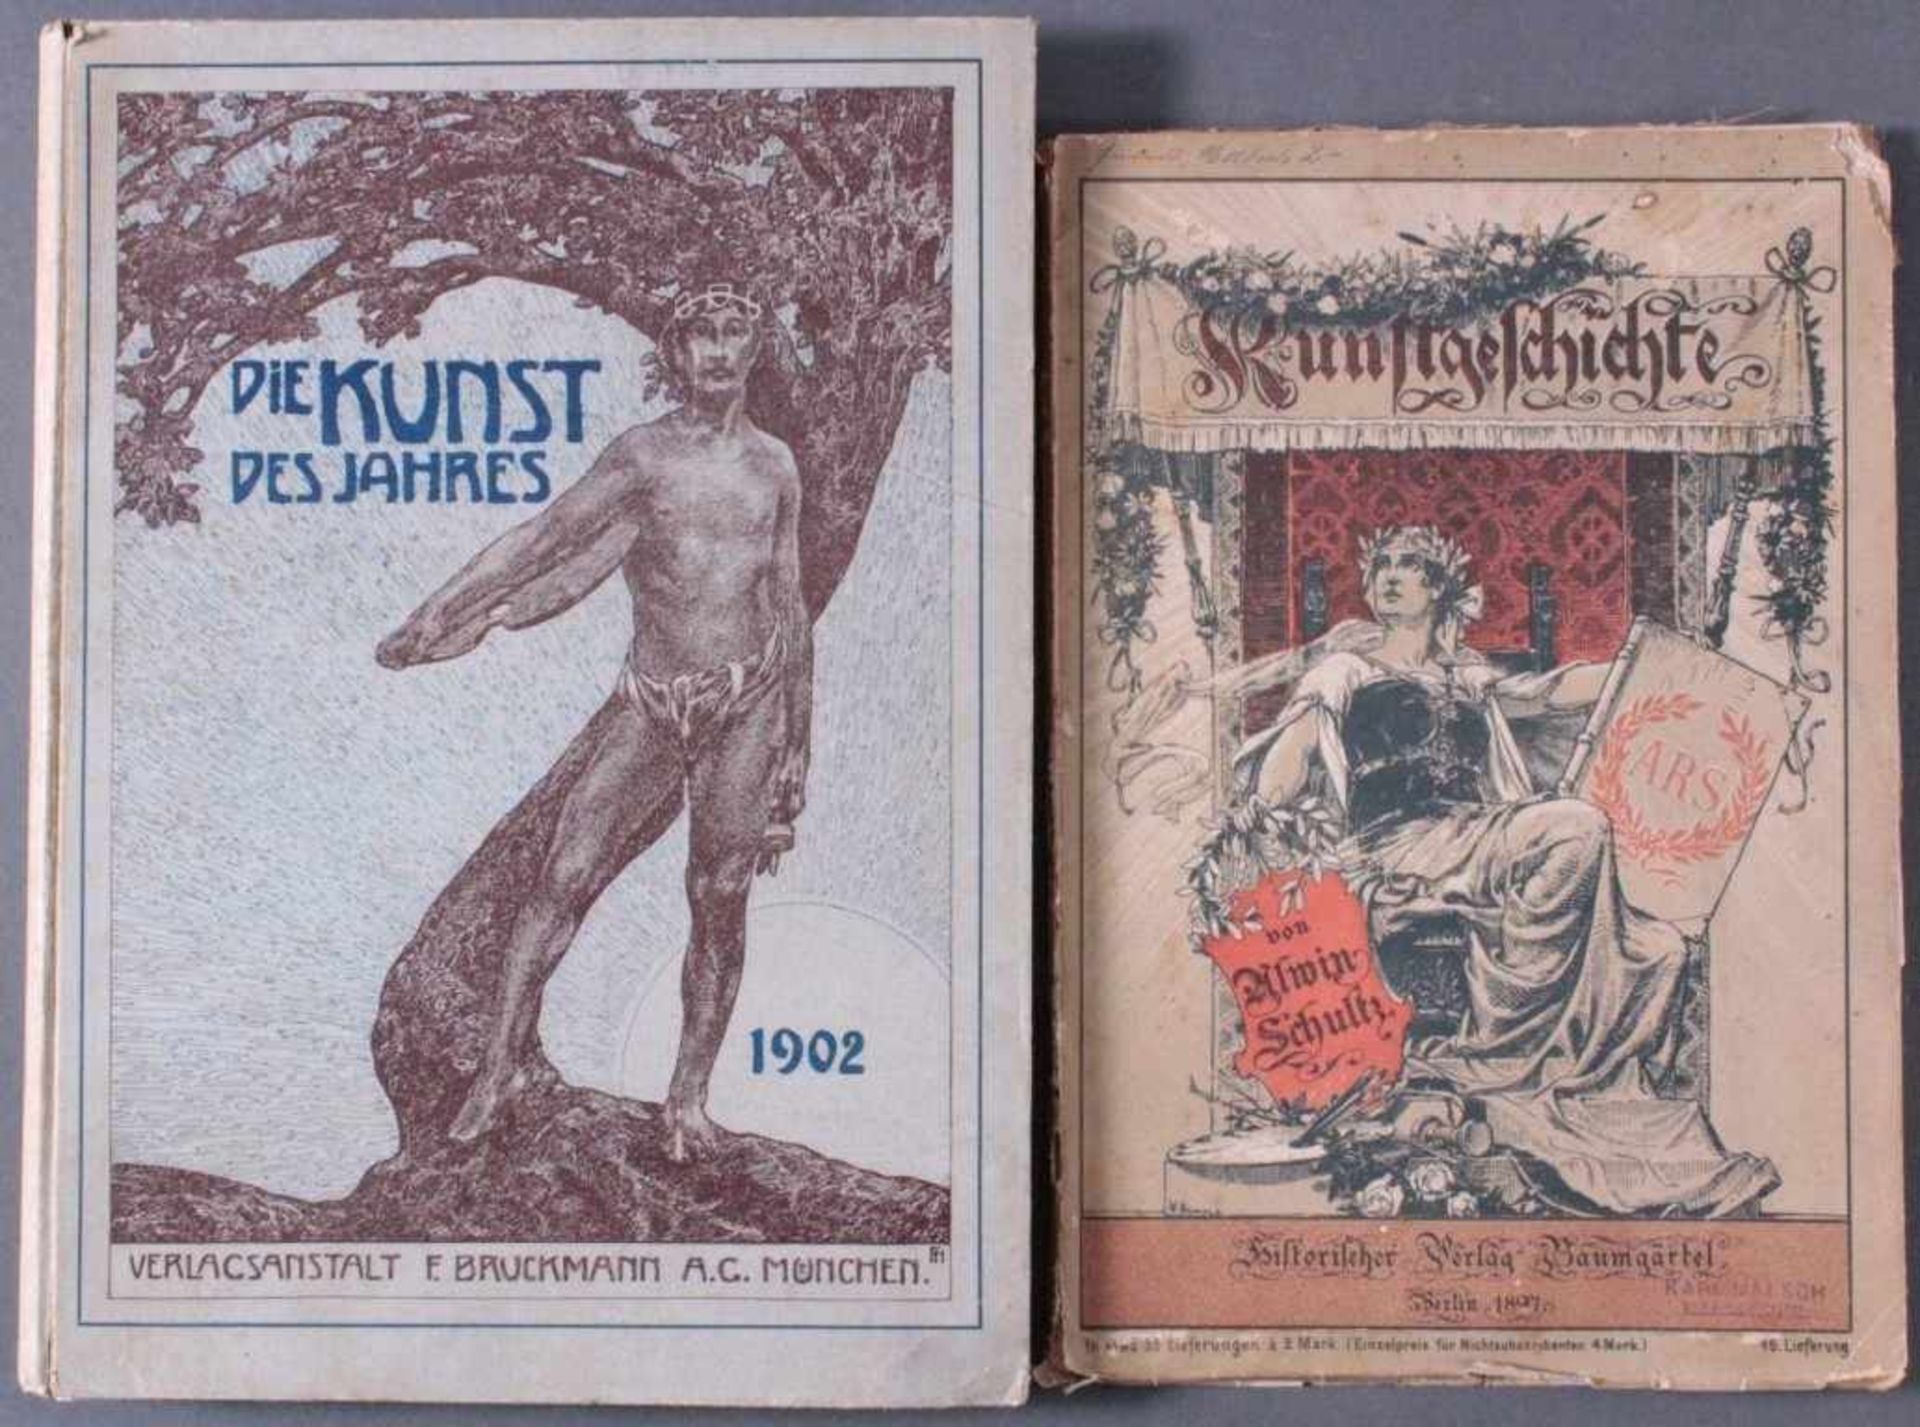 Zwei KunstbücherKunstgeschichte von Alwin Schultz, Historischer VerlagBaumgärtel, Berlin 1897. Teils